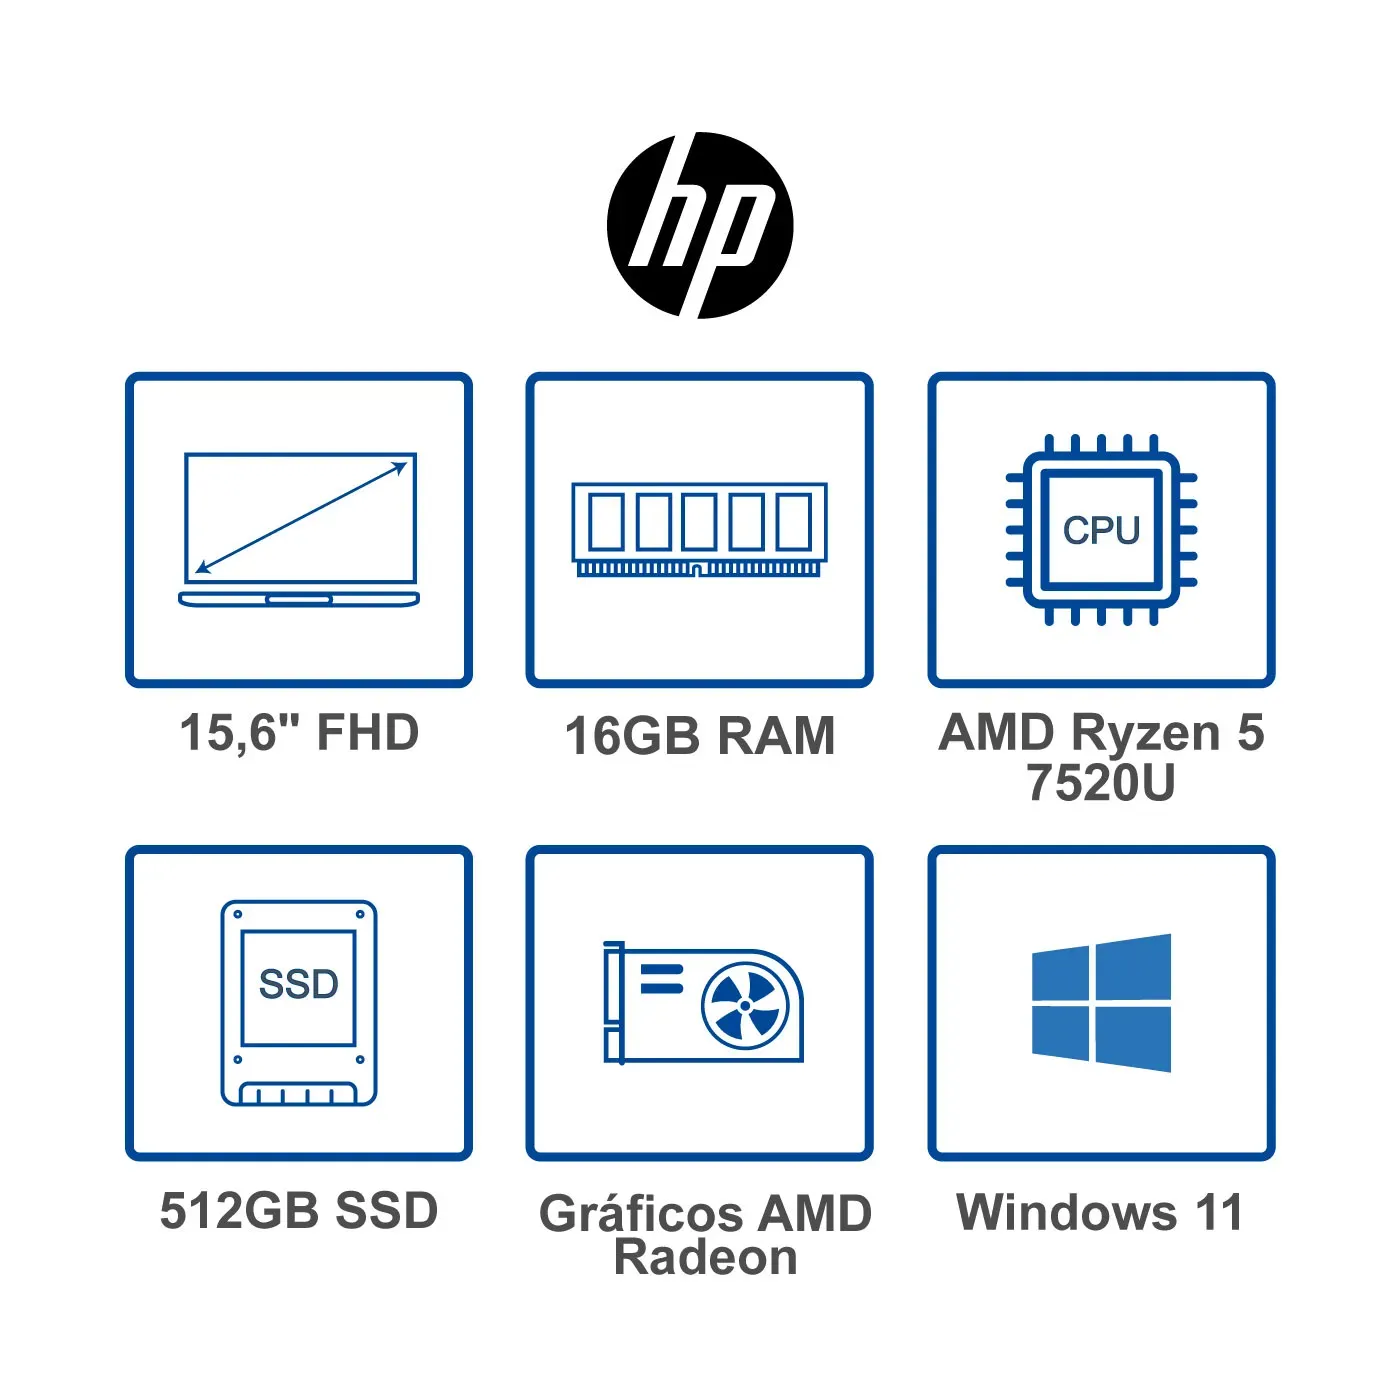 Computador Portátil HP 15.6" Pulgadas Fc0007la AMD Ryzen 5 - RAM 16GB - Disco SSD 512GB - Plata